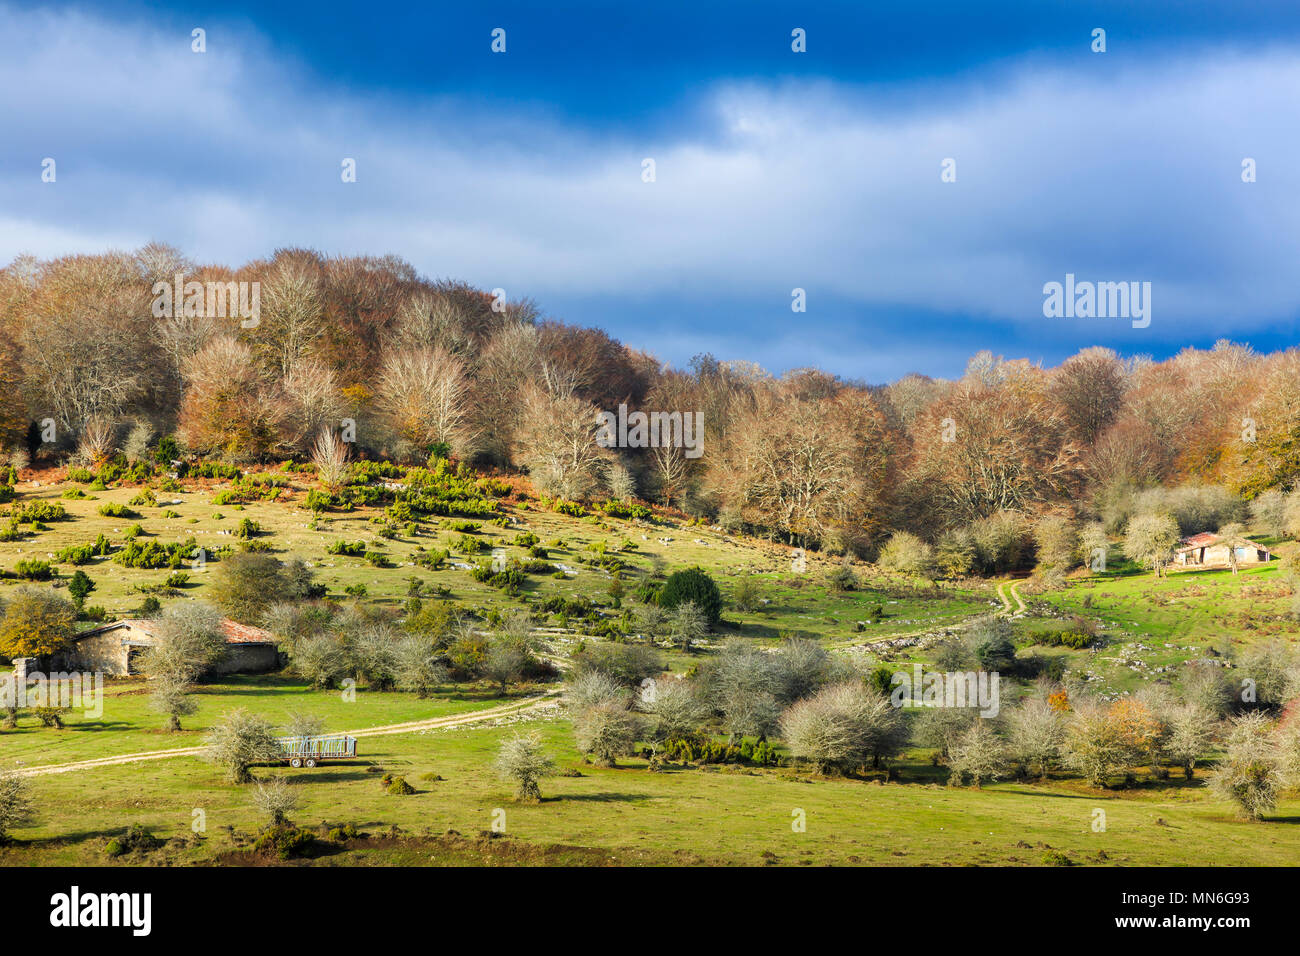 Legno di faggio e pascoli. Sierra de Urbasa-Andia parco naturale. Navarra, Spagna, Europa. Foto Stock